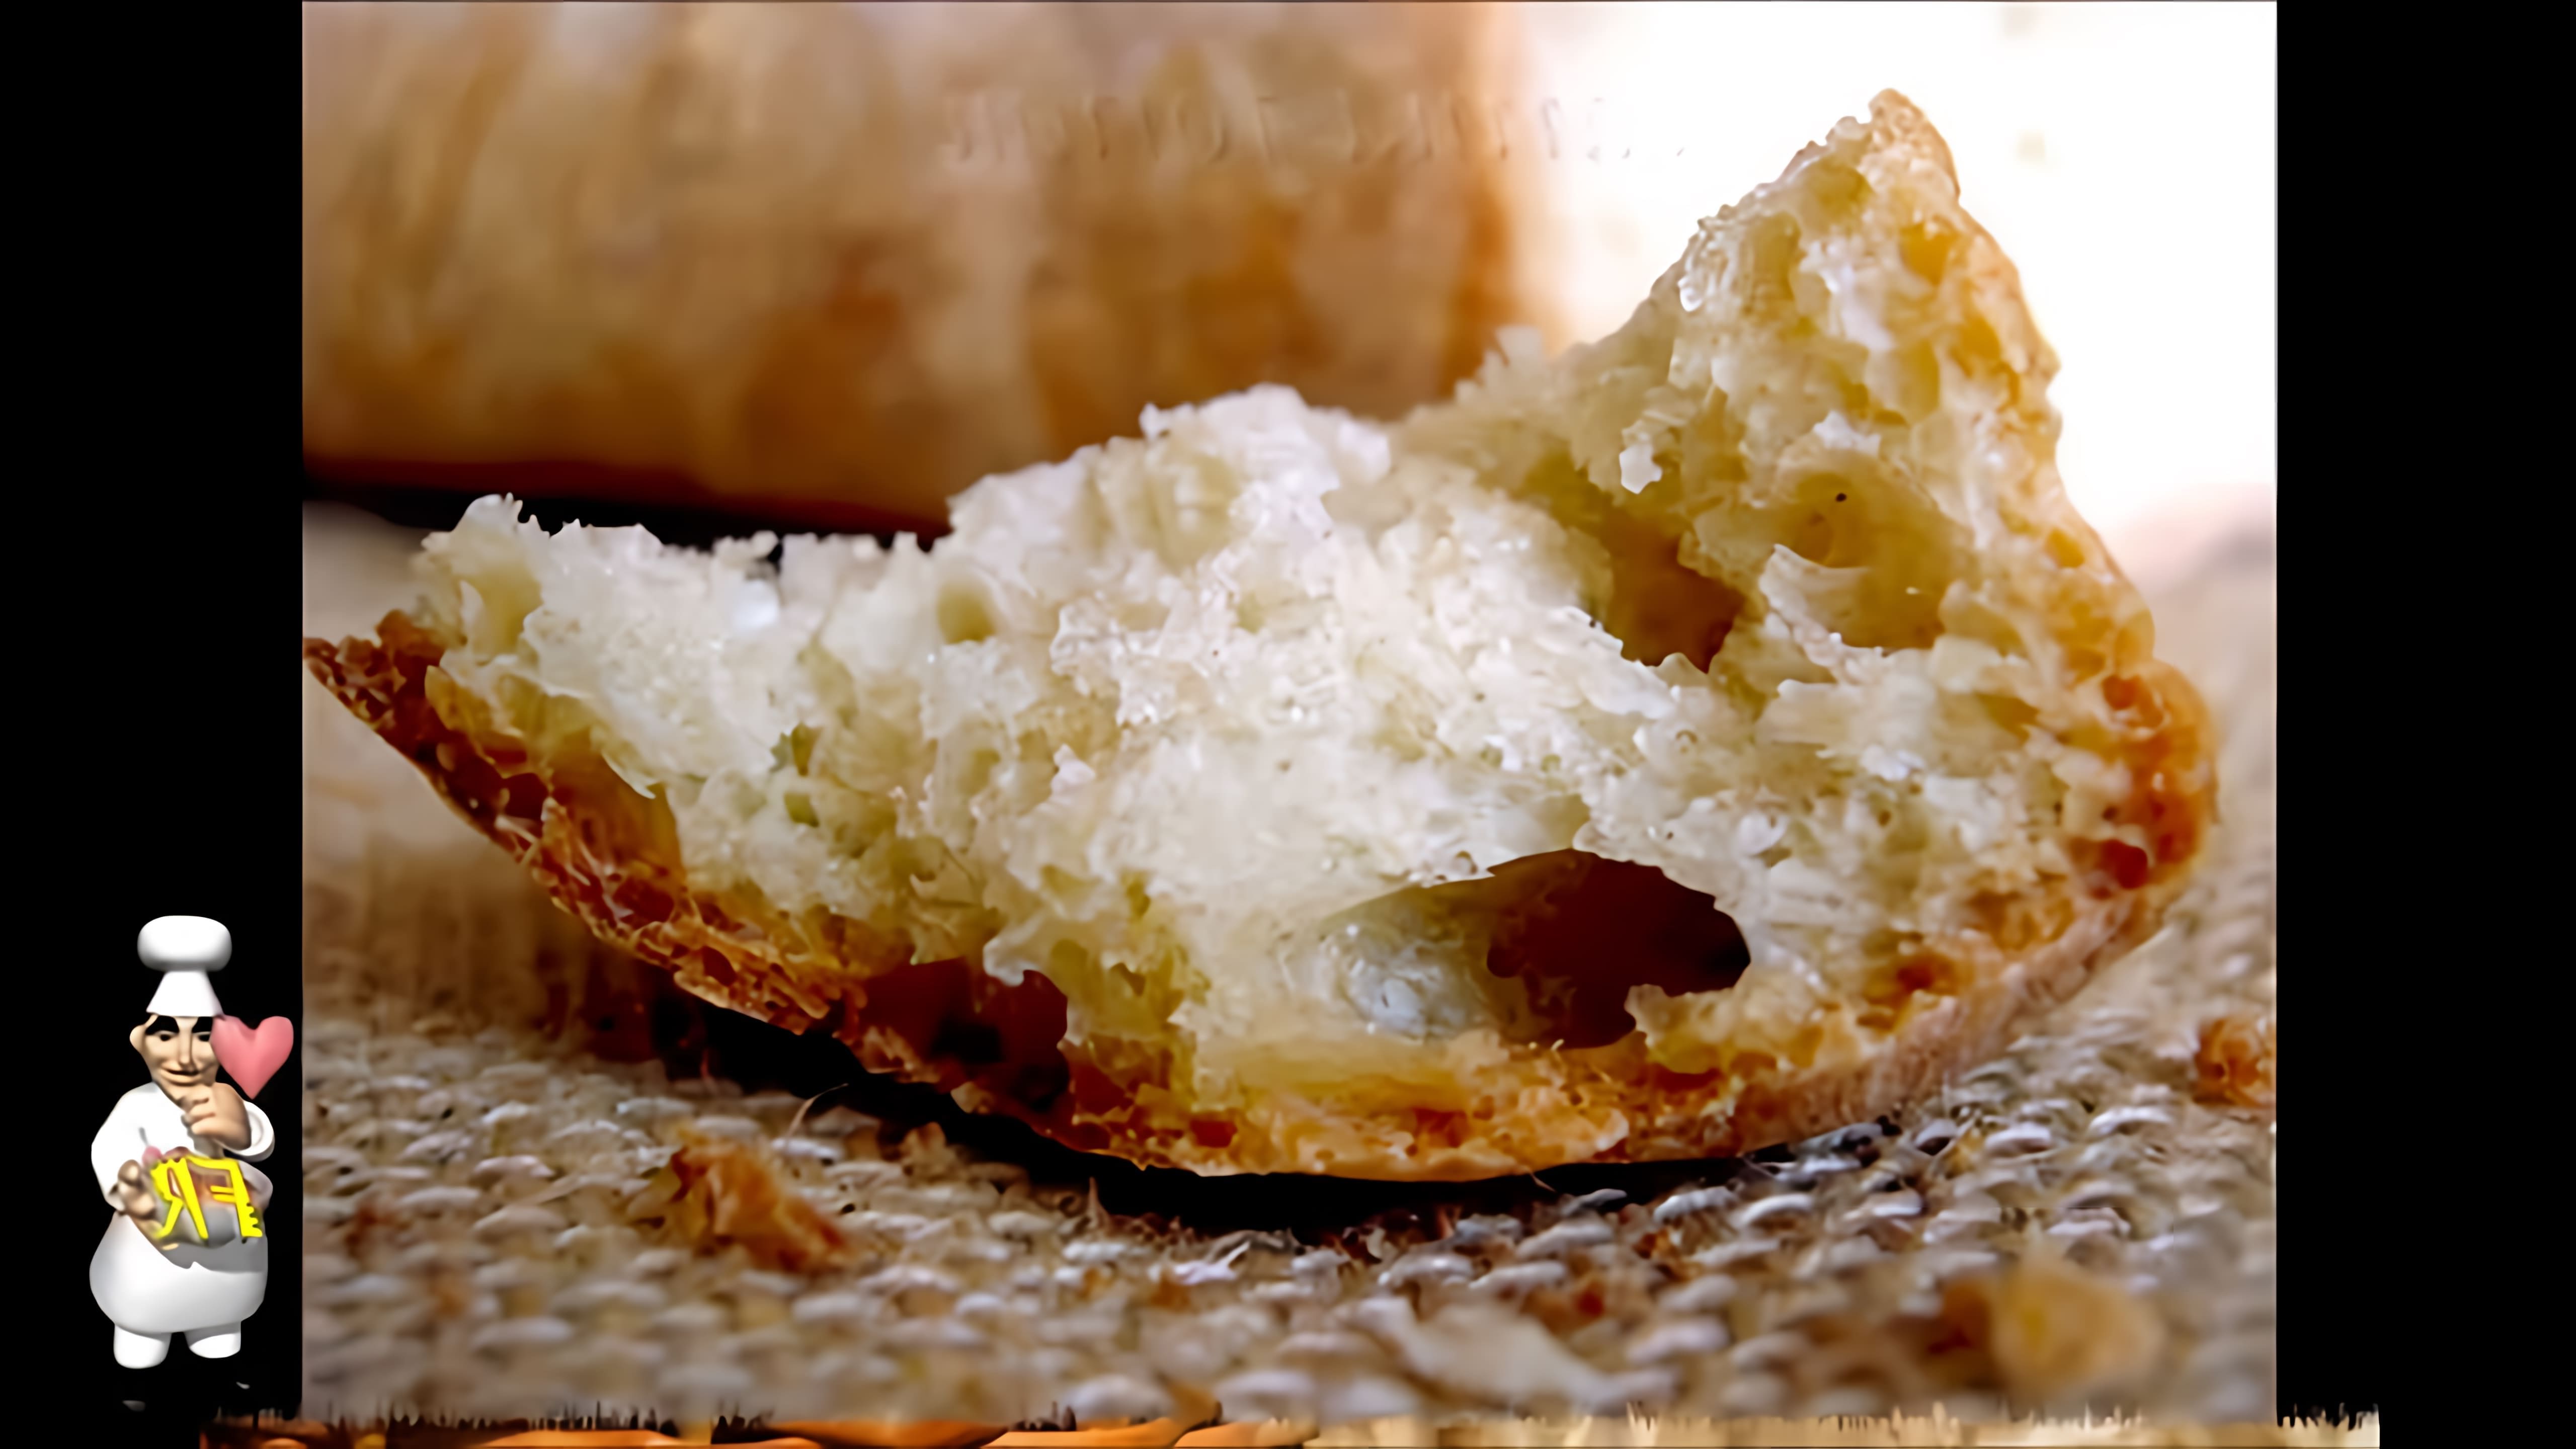 Французский хлеб - рецепт для хлебопечки

В этом видео-ролике вы увидите, как приготовить французский хлеб в хлебопечке